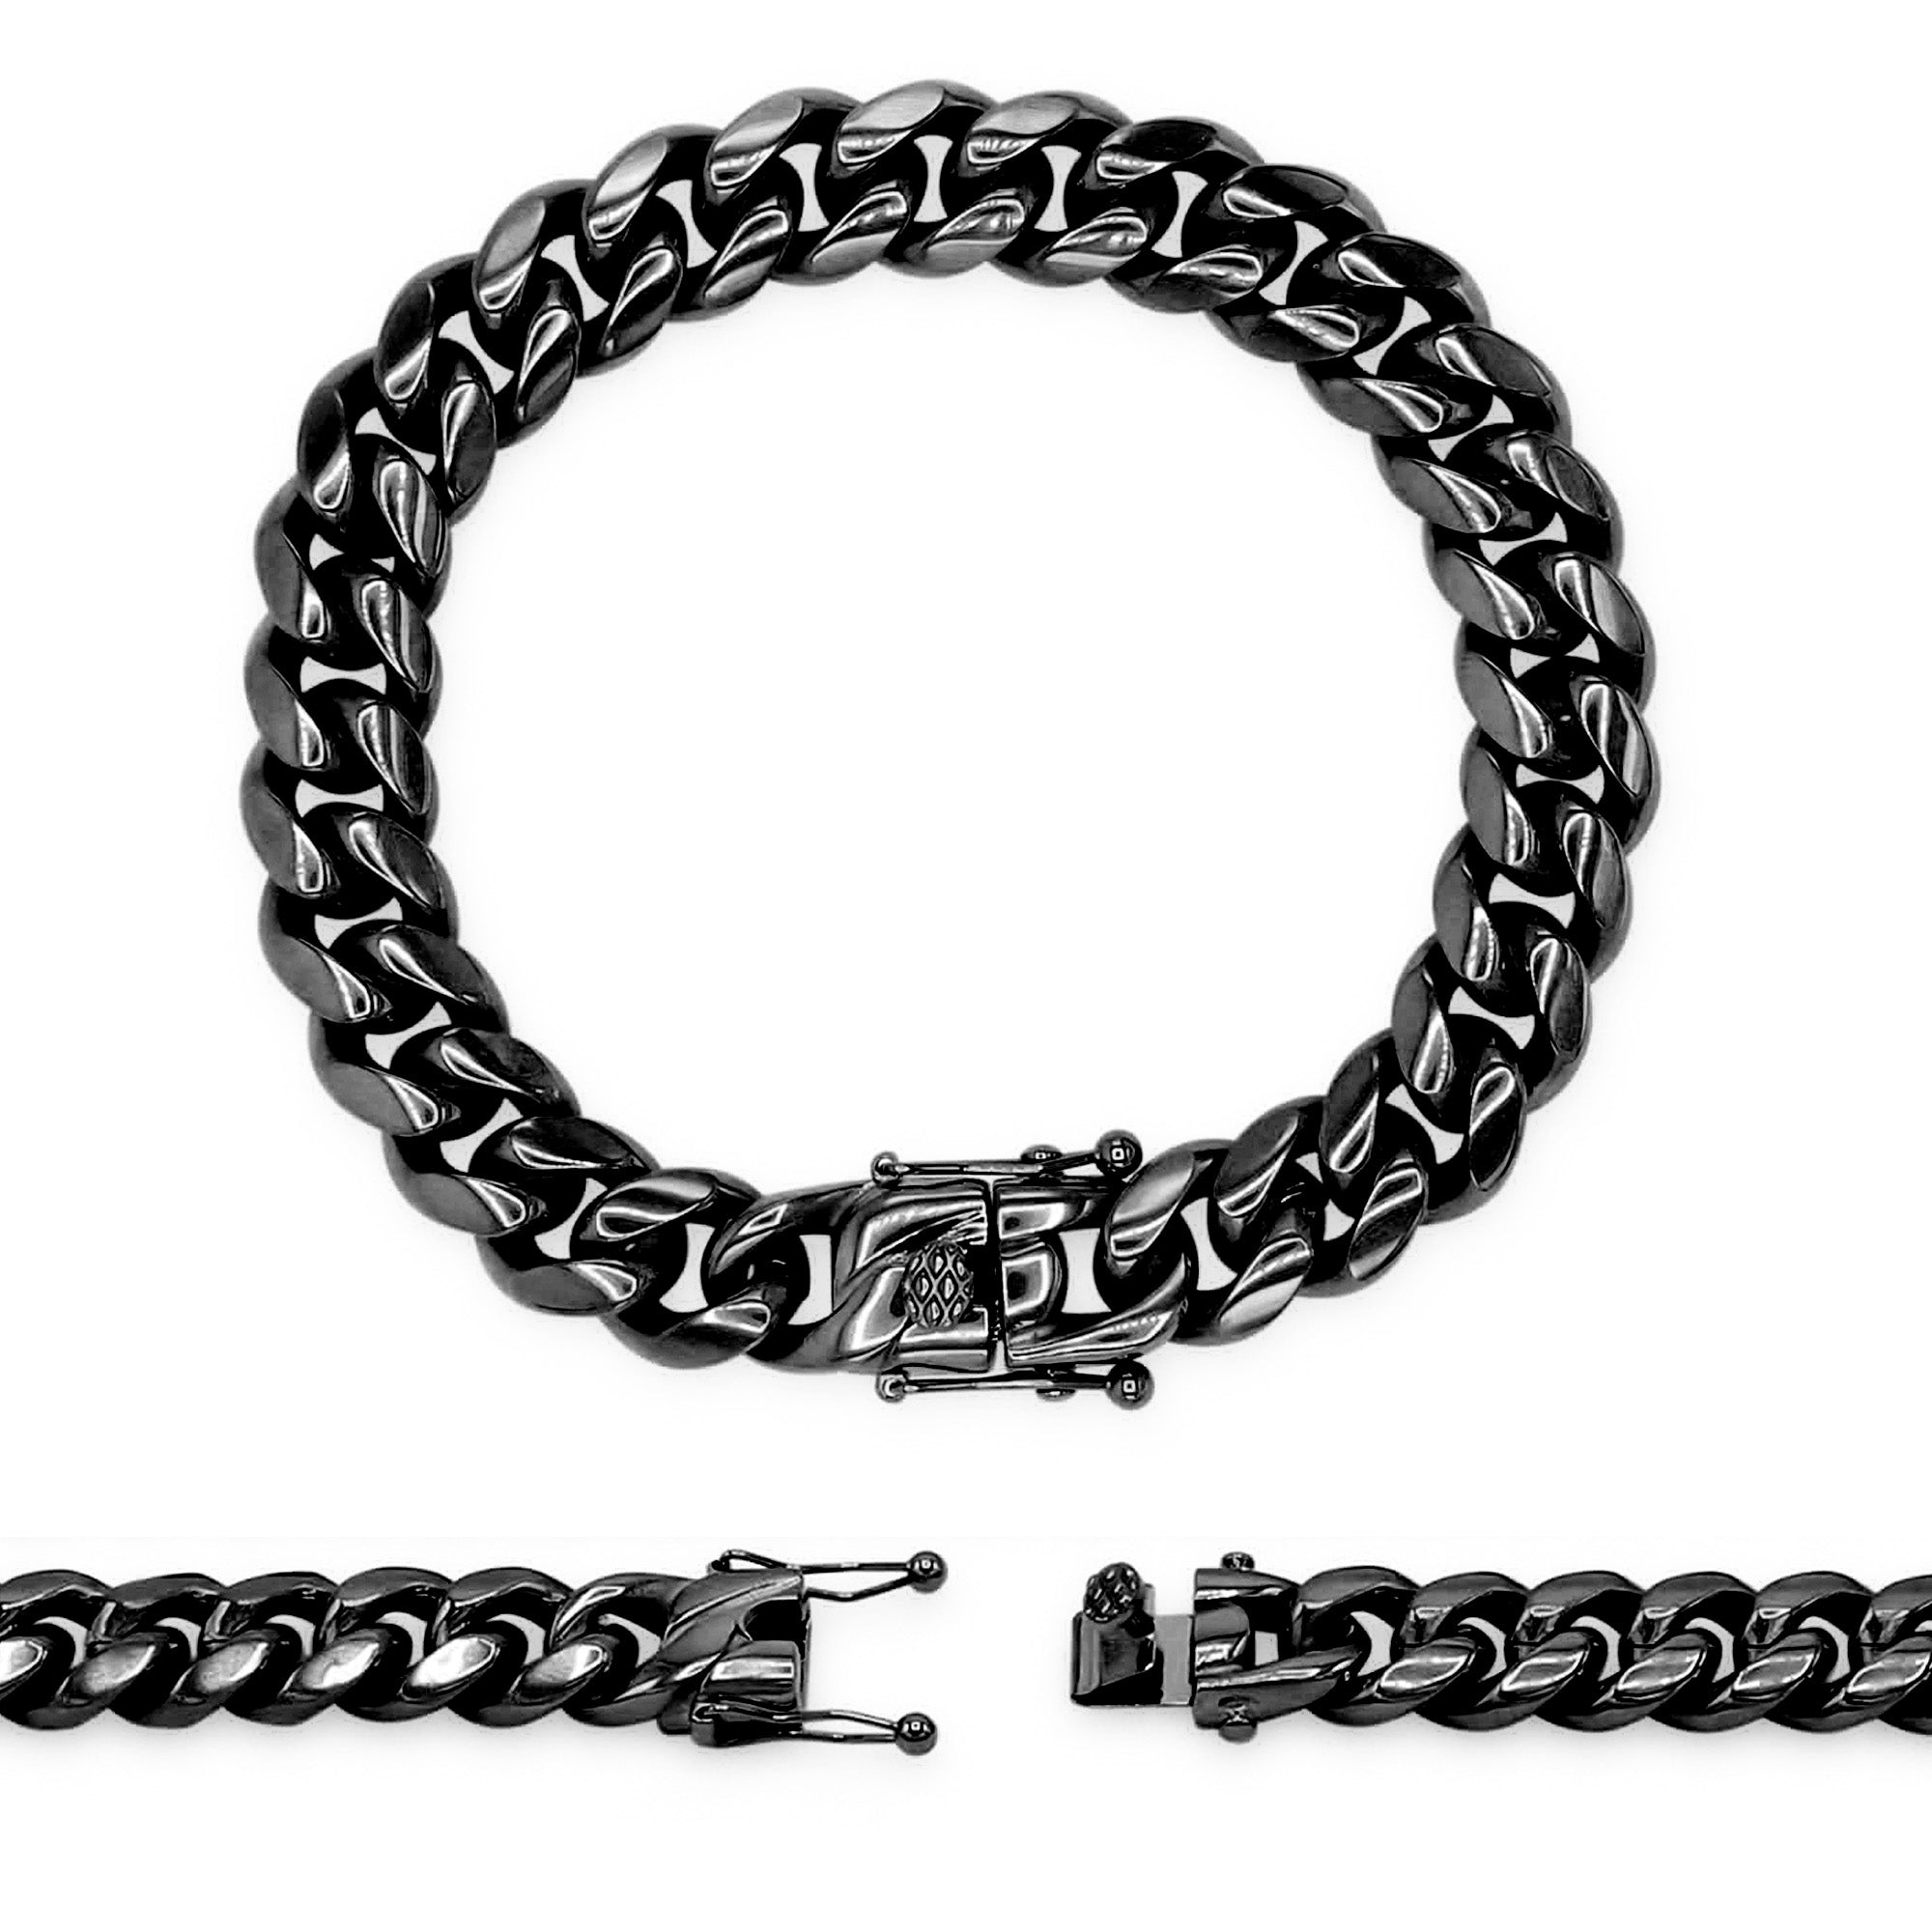 Men's Black Jewelry Collection  Men's Black Chains, Bracelets